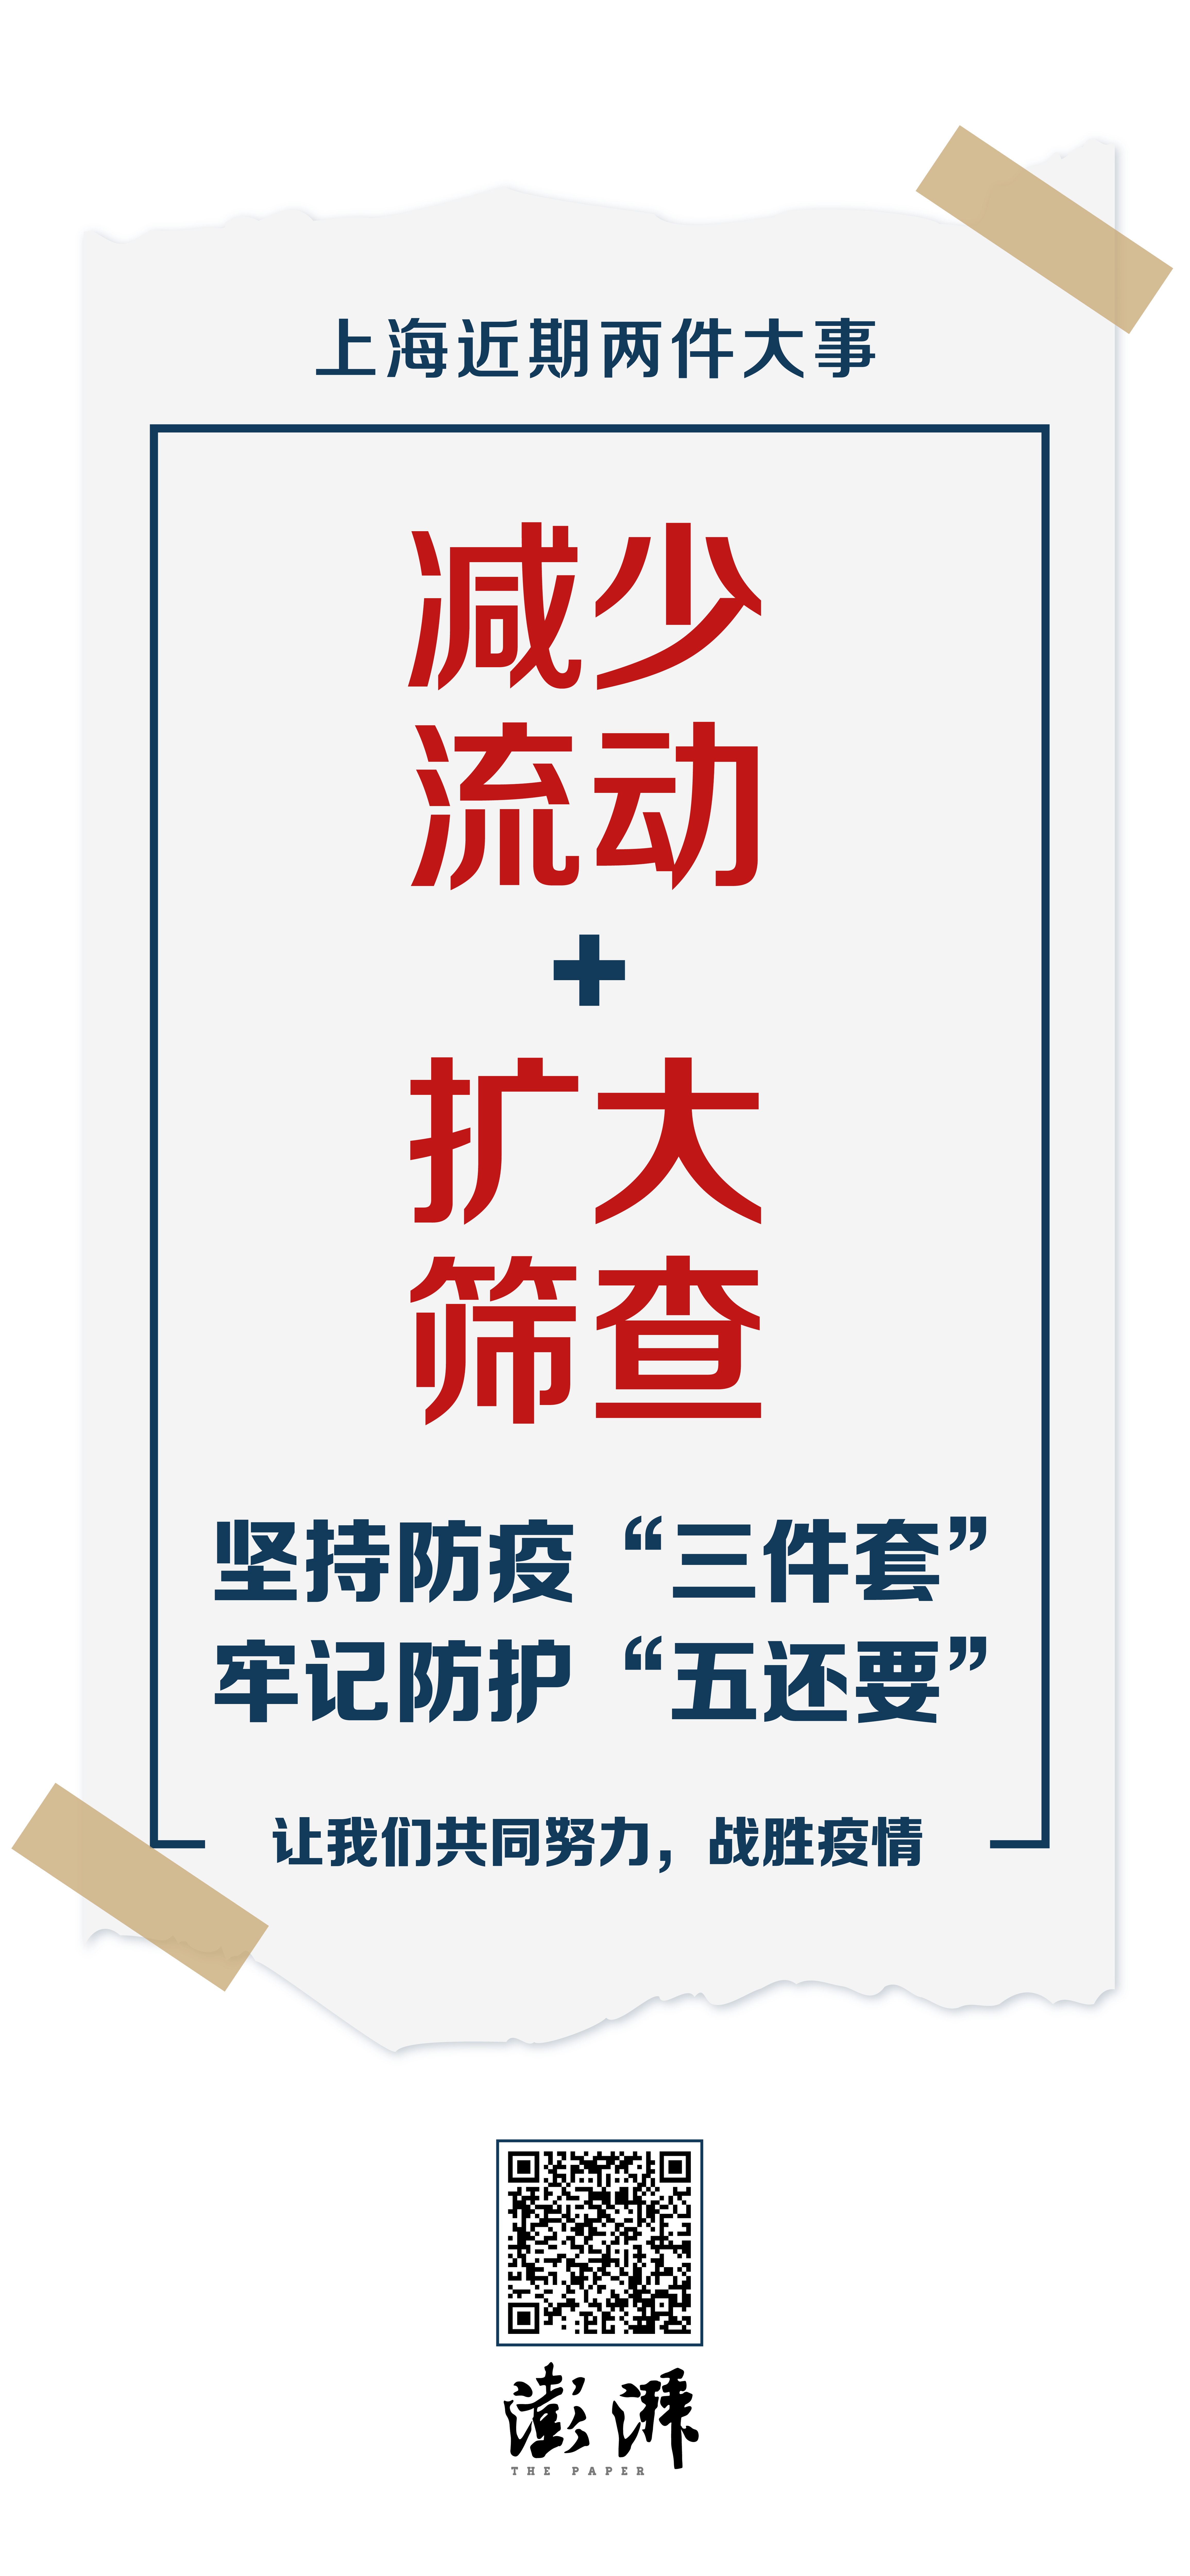 筛查减少流动+扩大筛查，六张海报告诉你上海近期两件大事